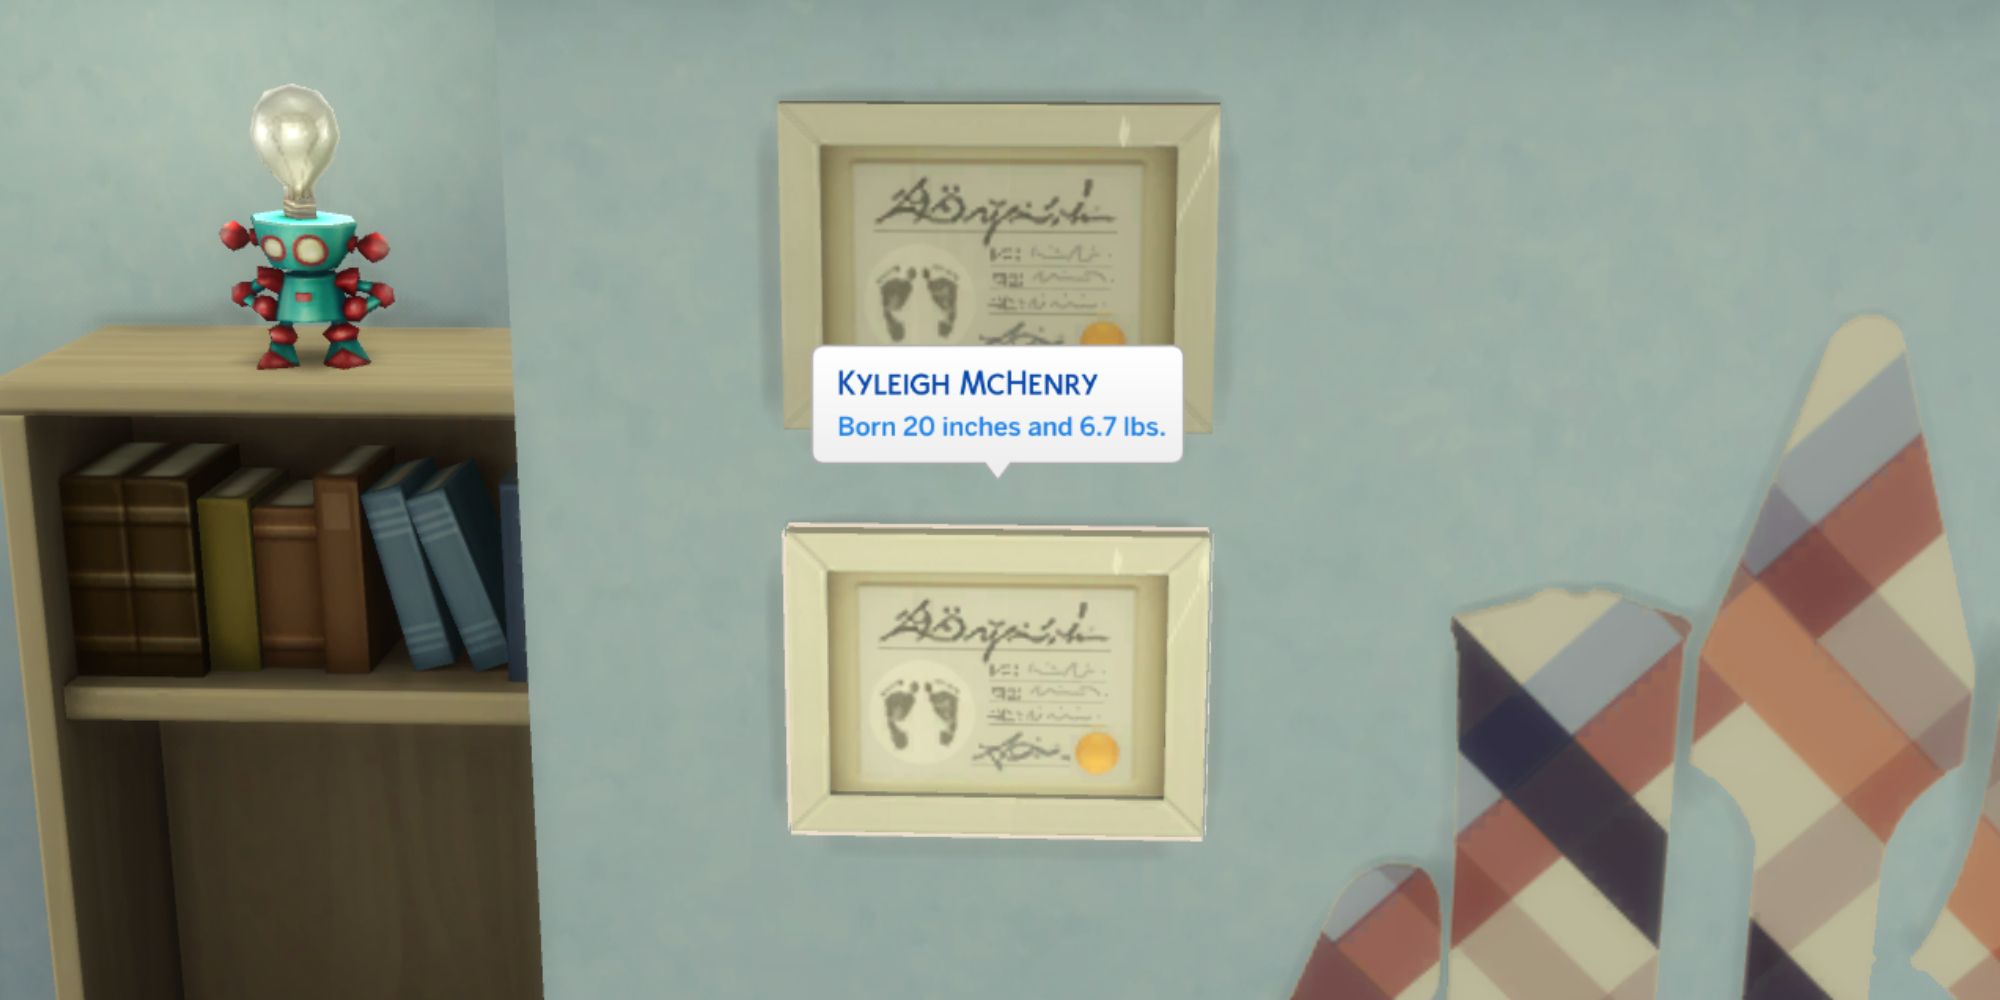 Como característica del Mod Parto de Los Sims 4 Pandasama, los jugadores pueden ajustar los certificados de nacimiento y personalizarlos para el bebé.